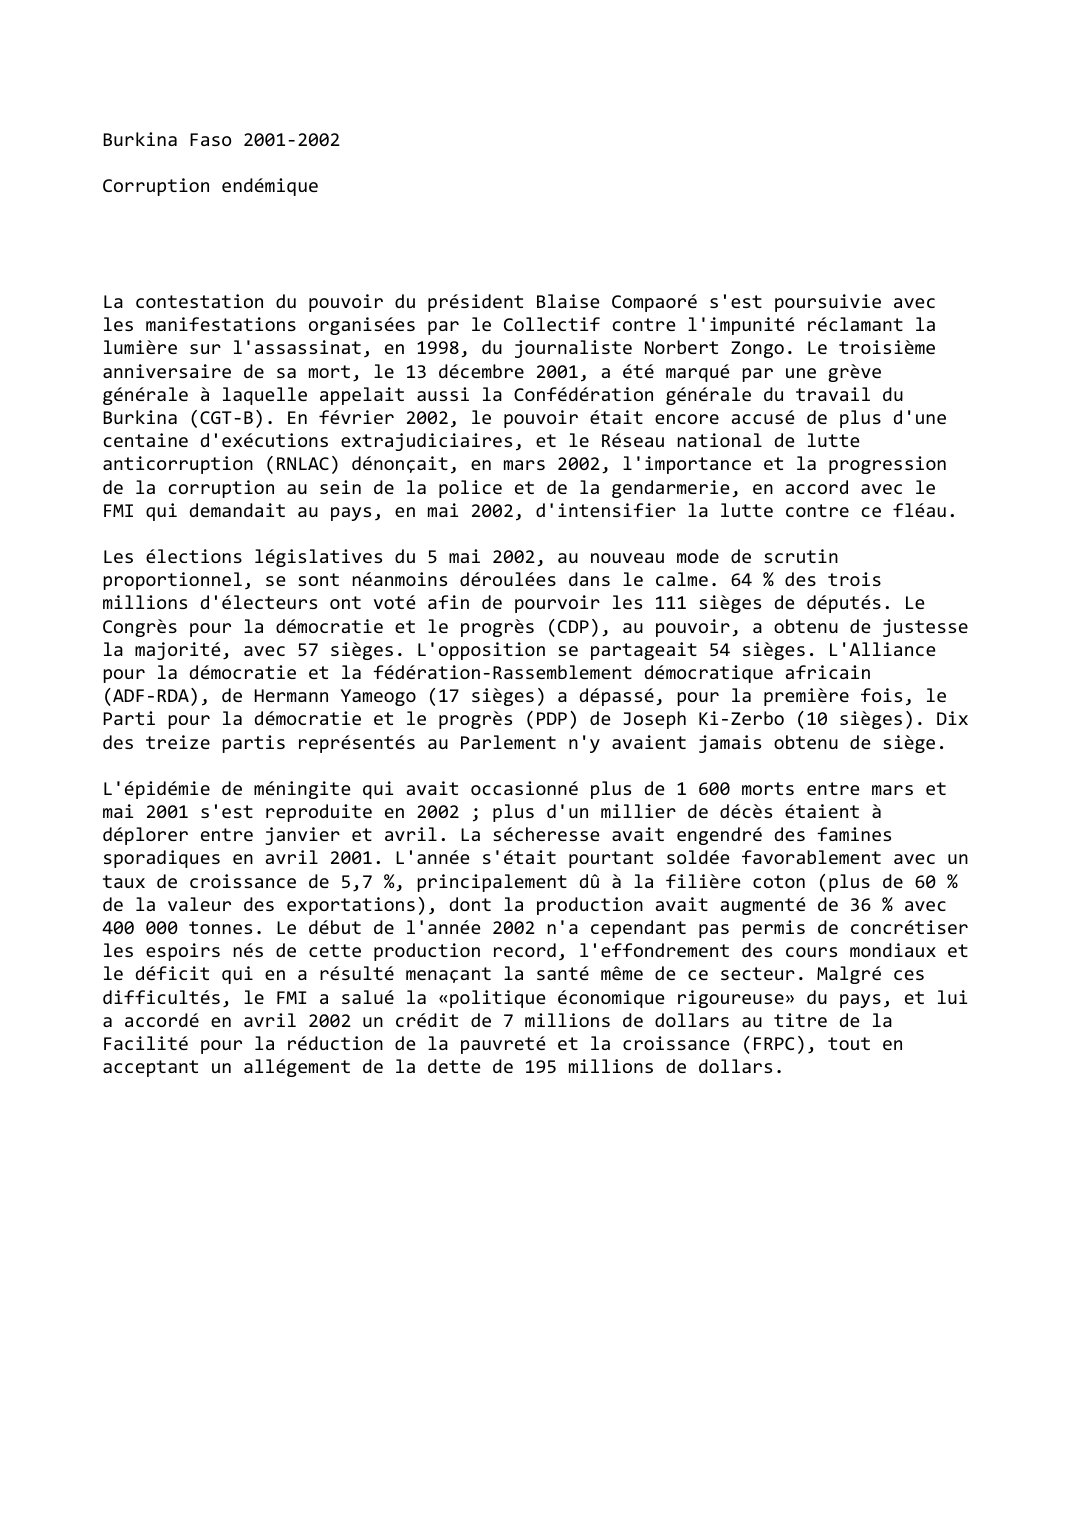 Prévisualisation du document Burkina Faso (2001-2002): Corruption endémique